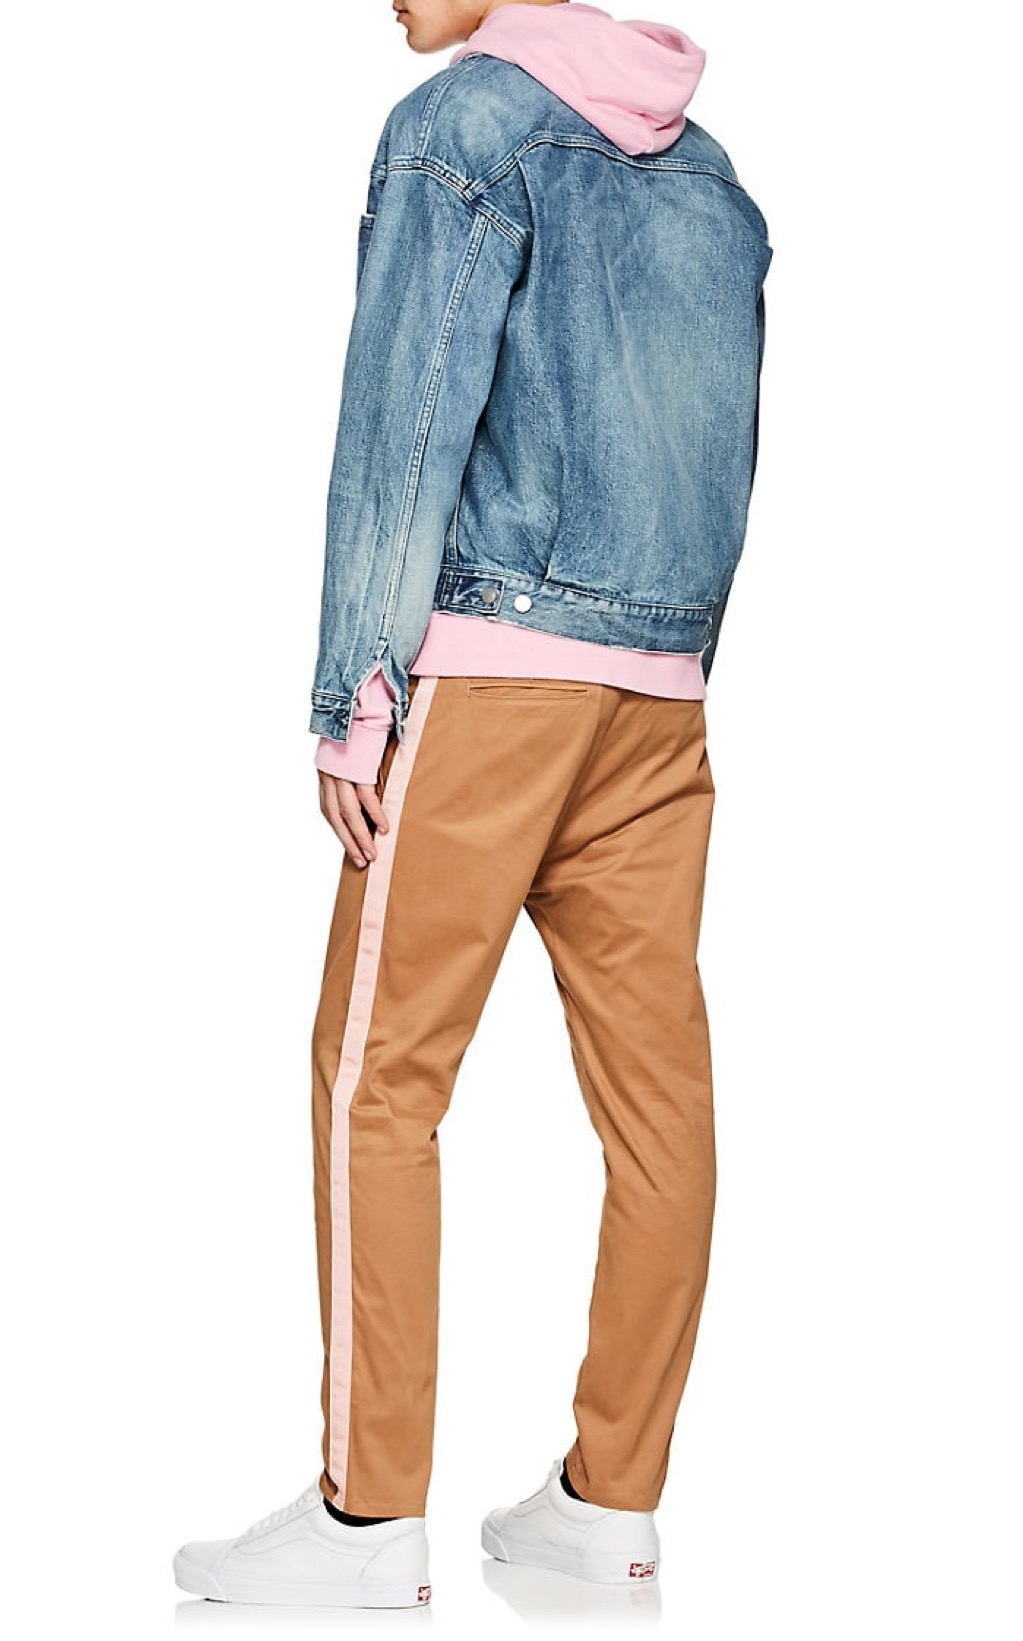 BARNEYS pants Menswear Trends